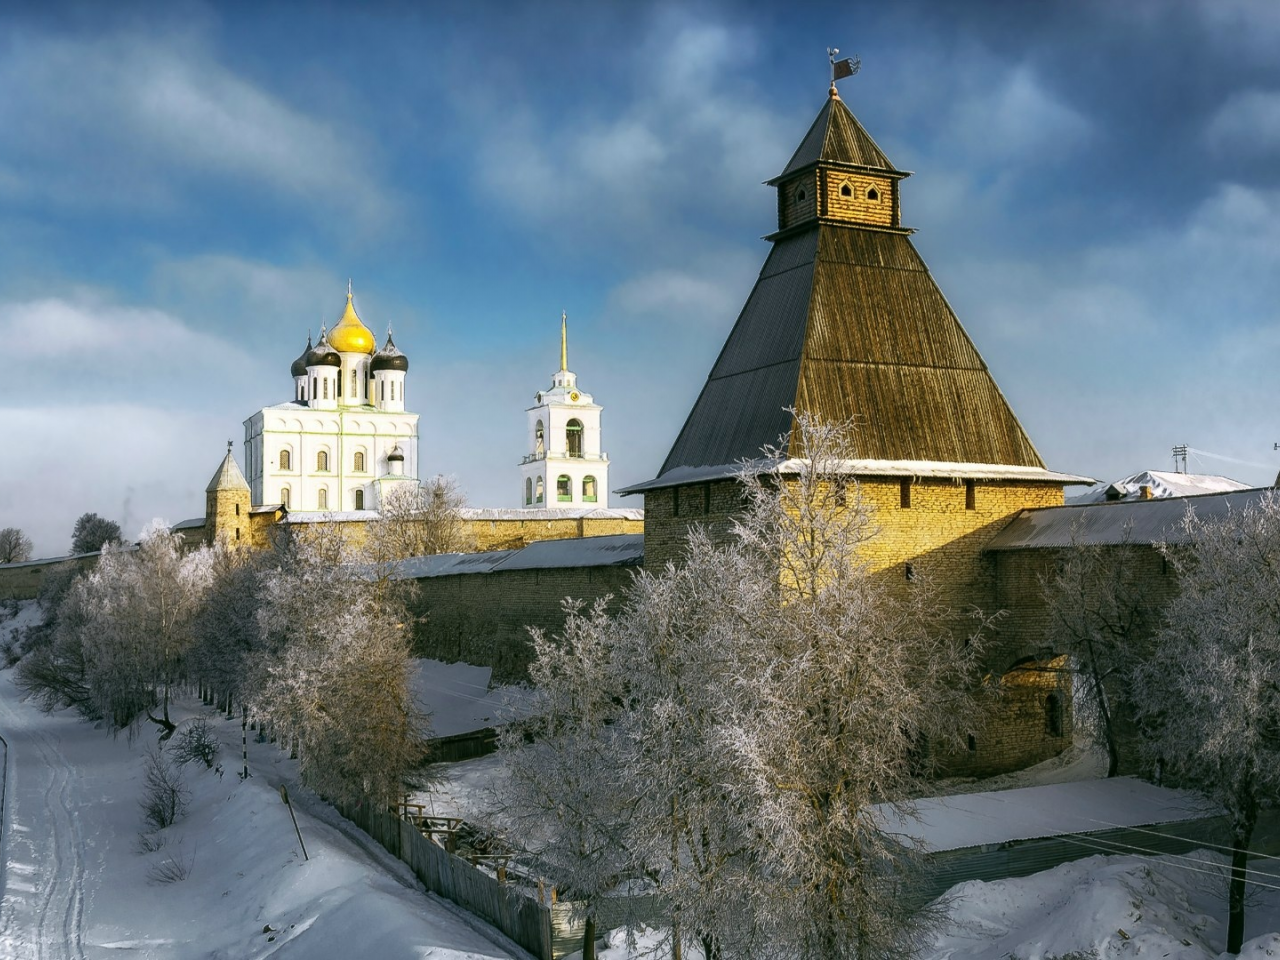 псков, кремль, башня, крепость, церковь, купола, река, деревья, зима, снег, небо, облака